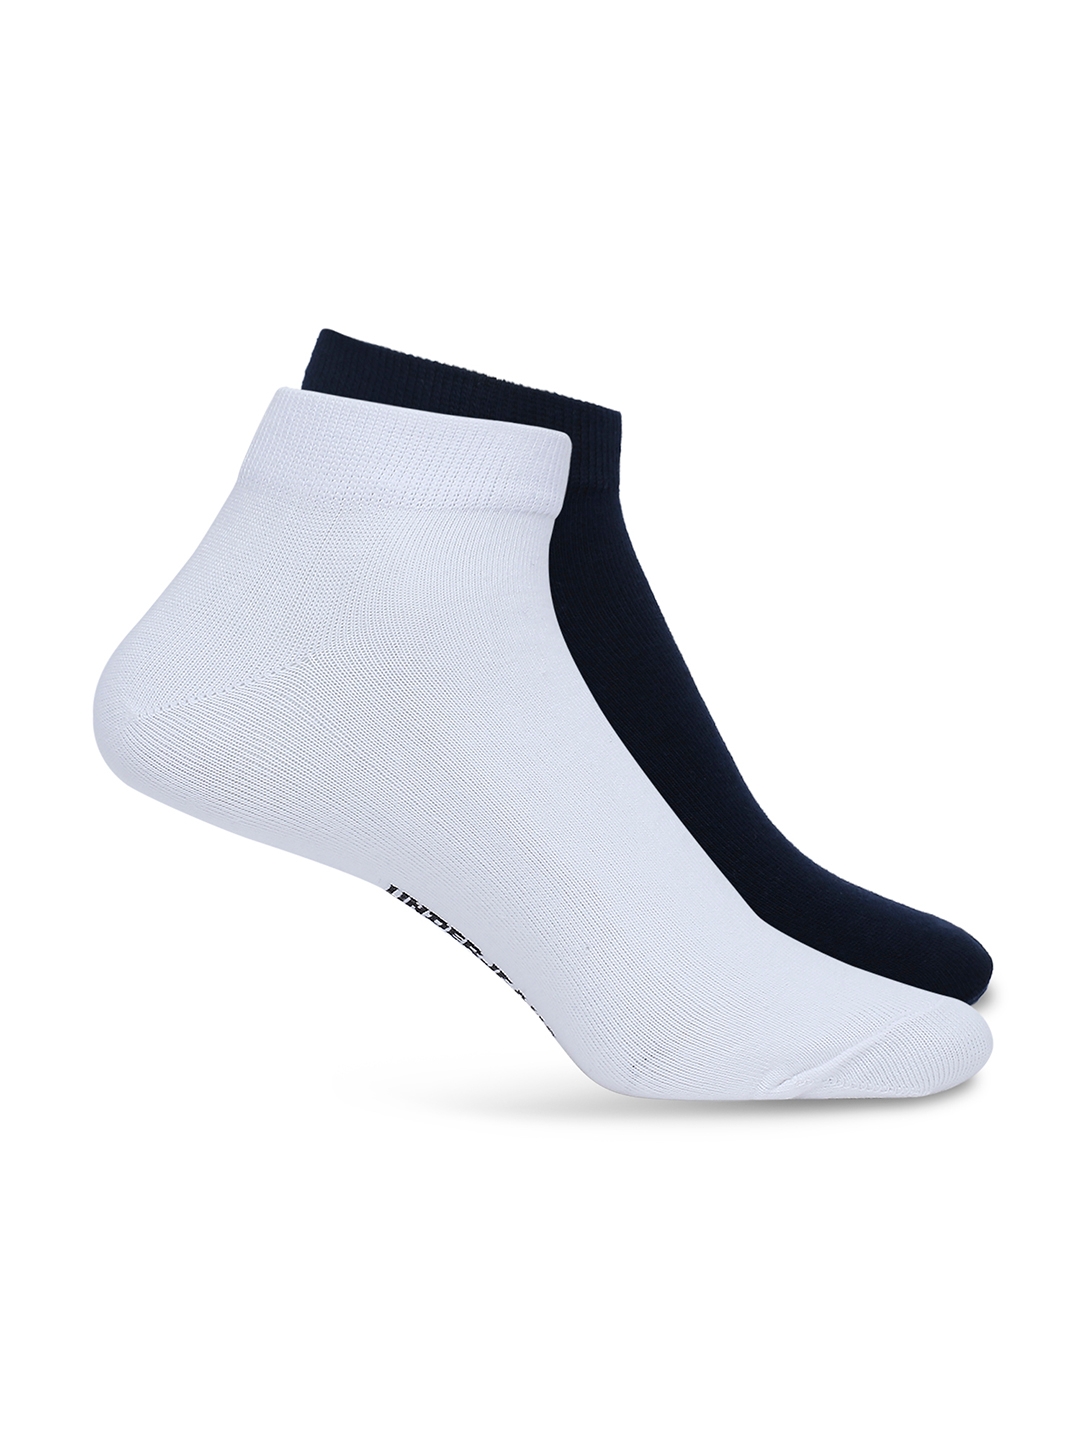 spykar | Underjeans By Spykar Men White & Navy Cotton Blend Sneaker Socks - Pack Of 2